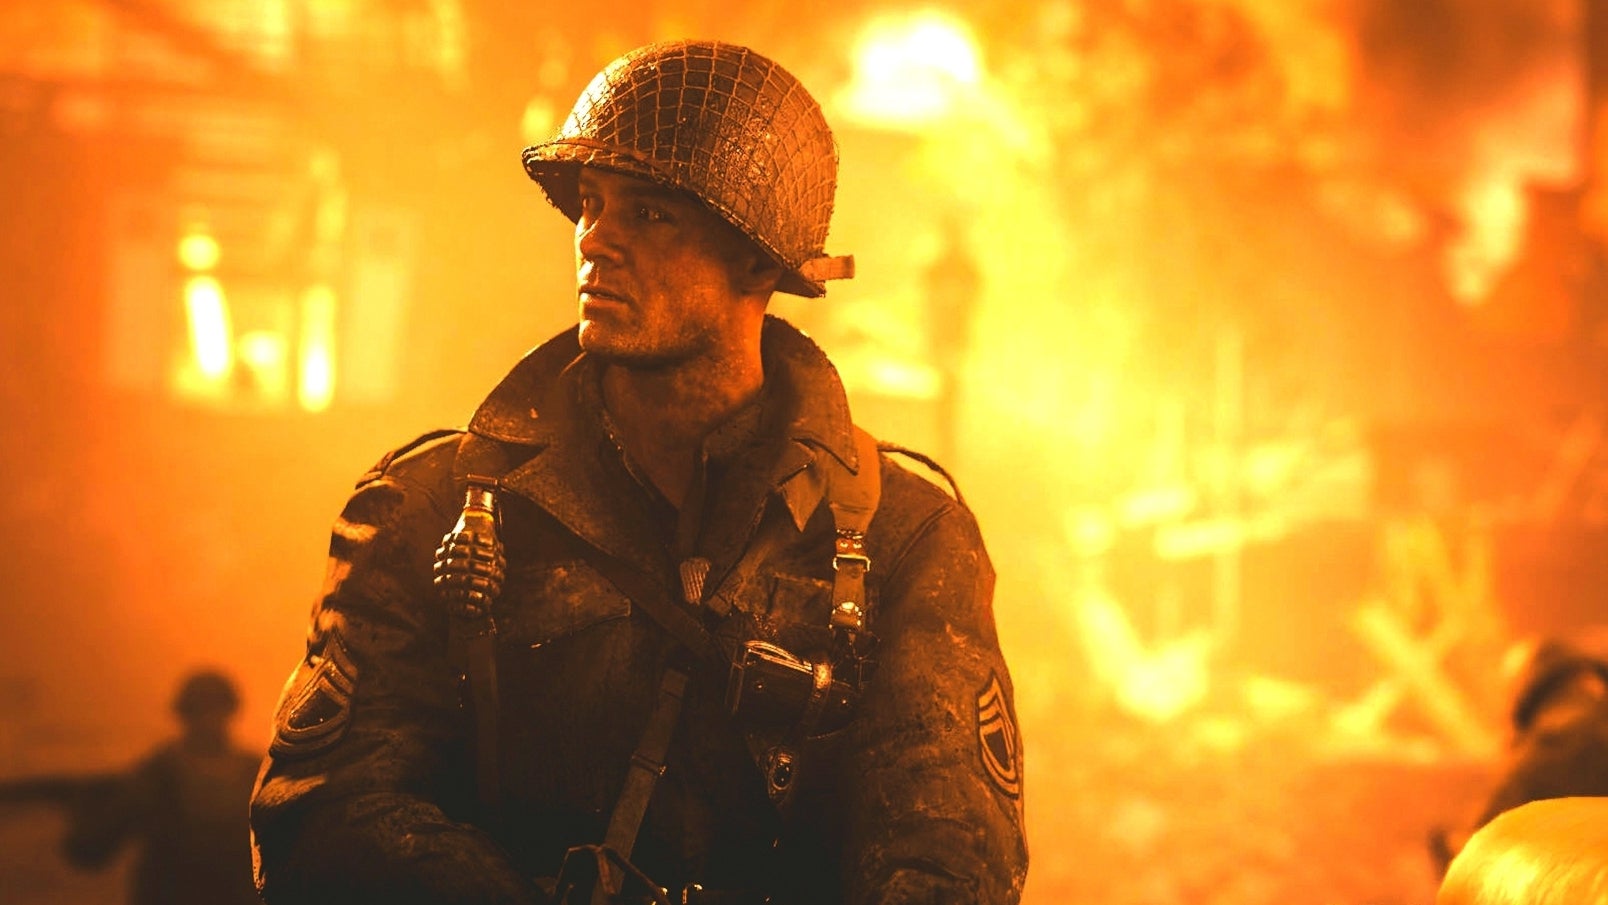 Immagine di Call of Duty: WWII è giocabile gratuitamente su Steam questo weekend